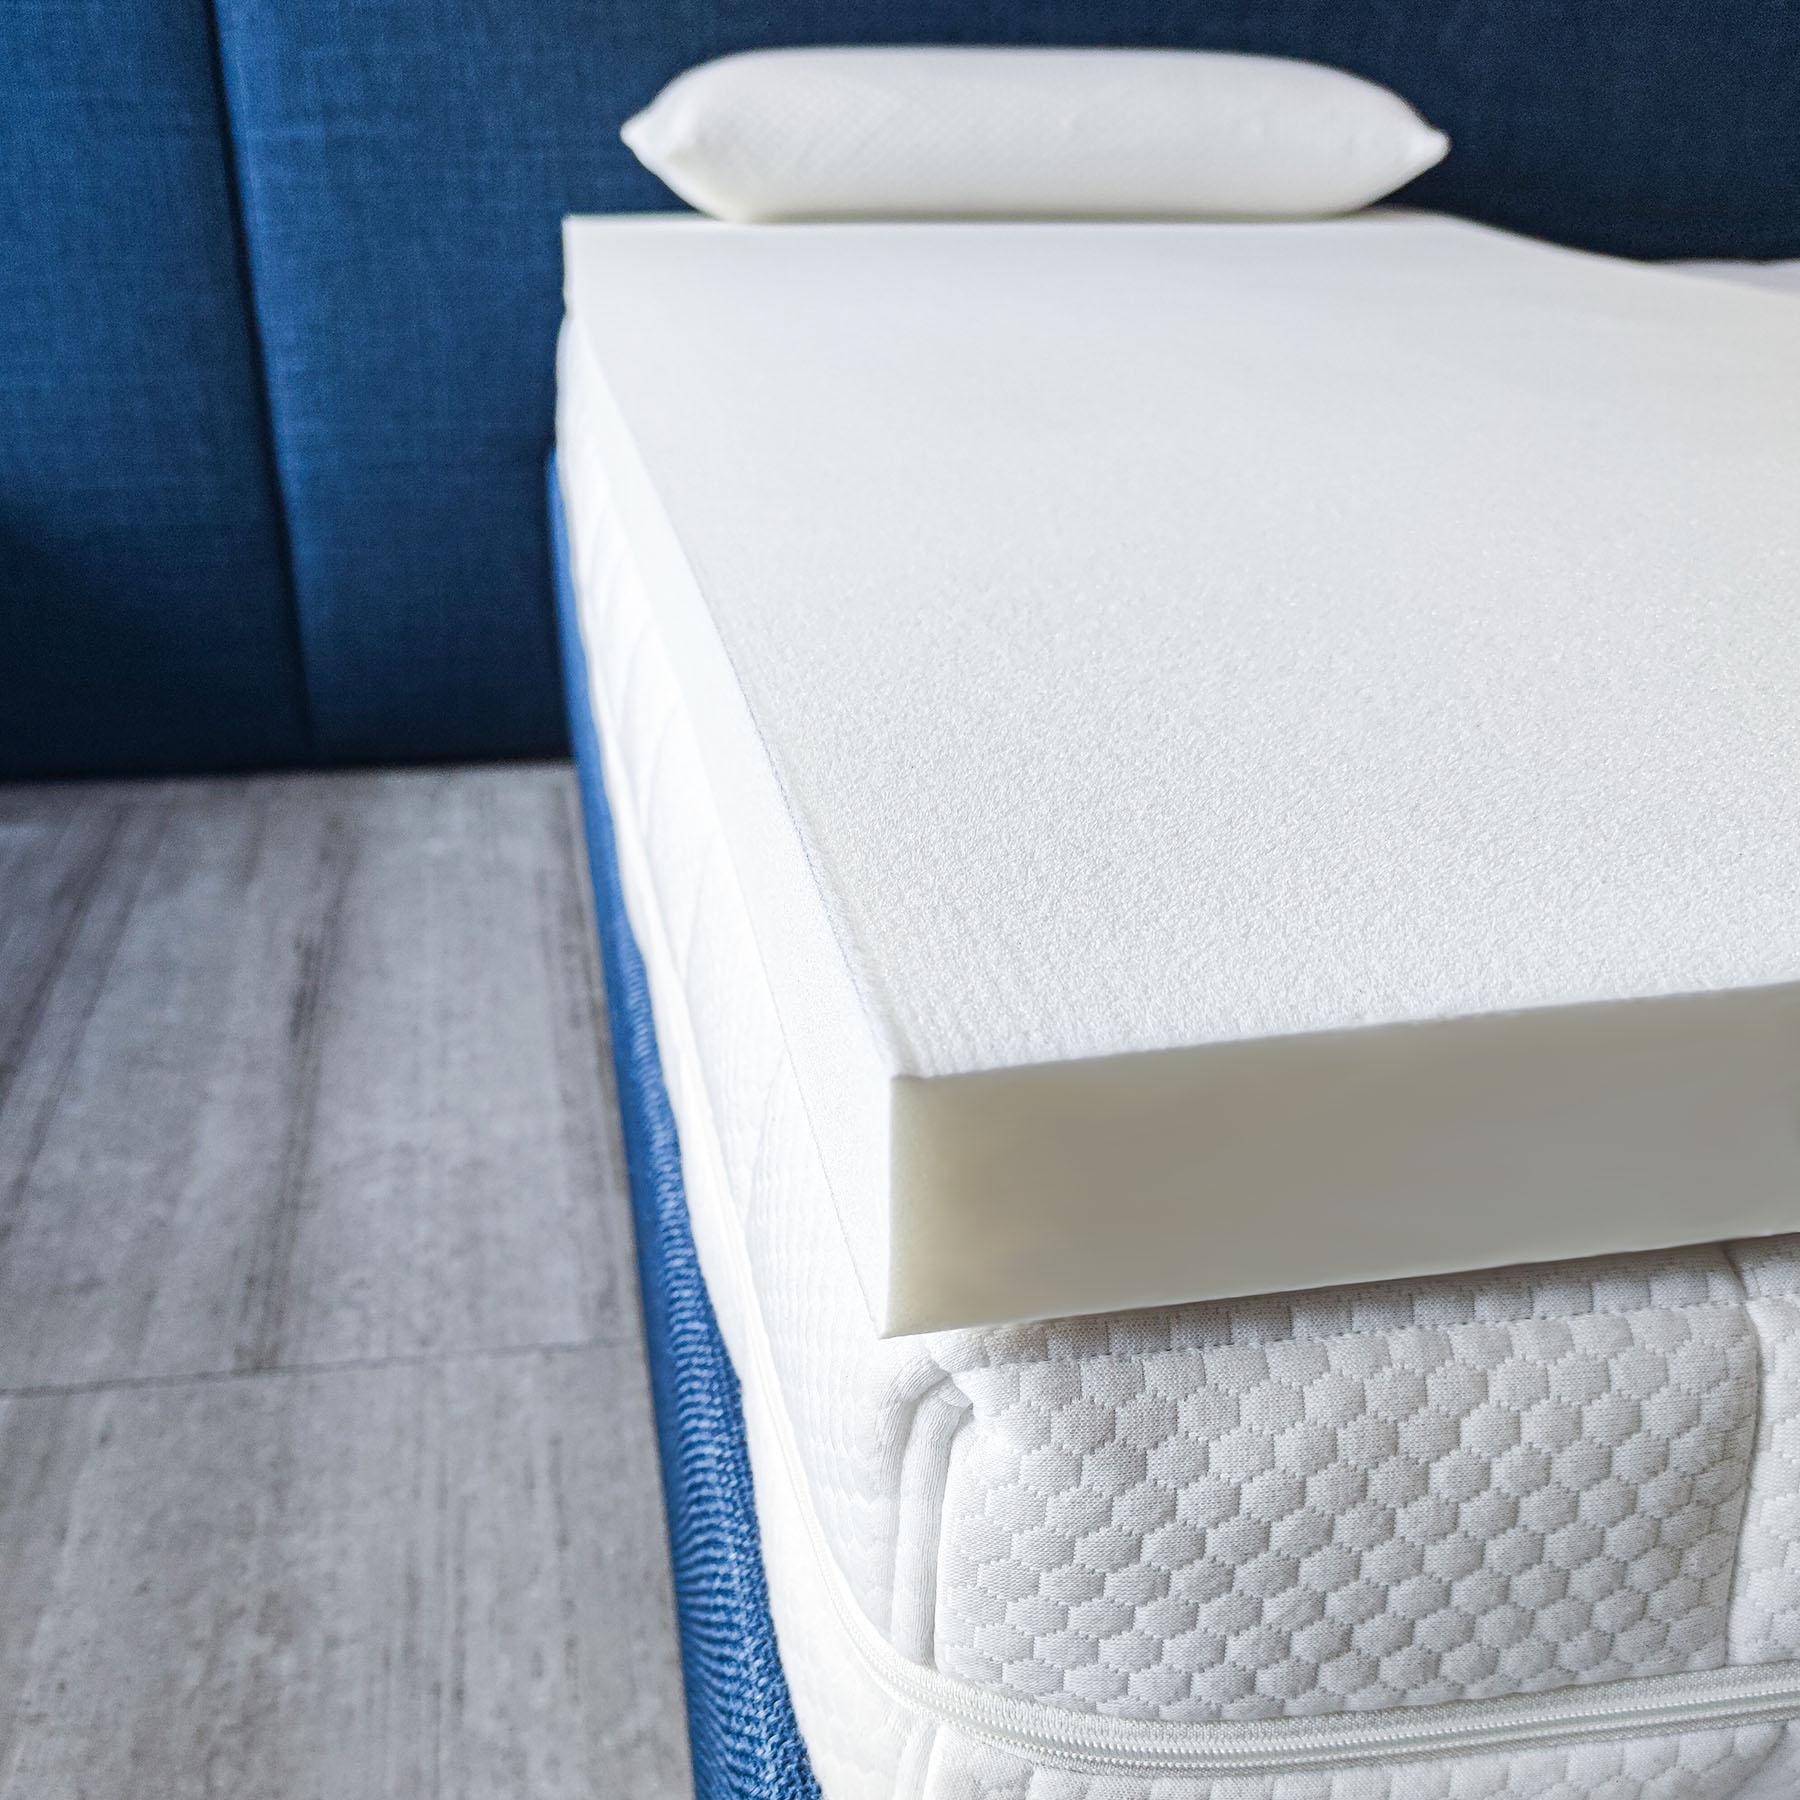 Topper MEMO TOPPER Memory Foam Extrapur®, altezza 6cm - Comfort extra per il tuo materasso su Beliamo.com